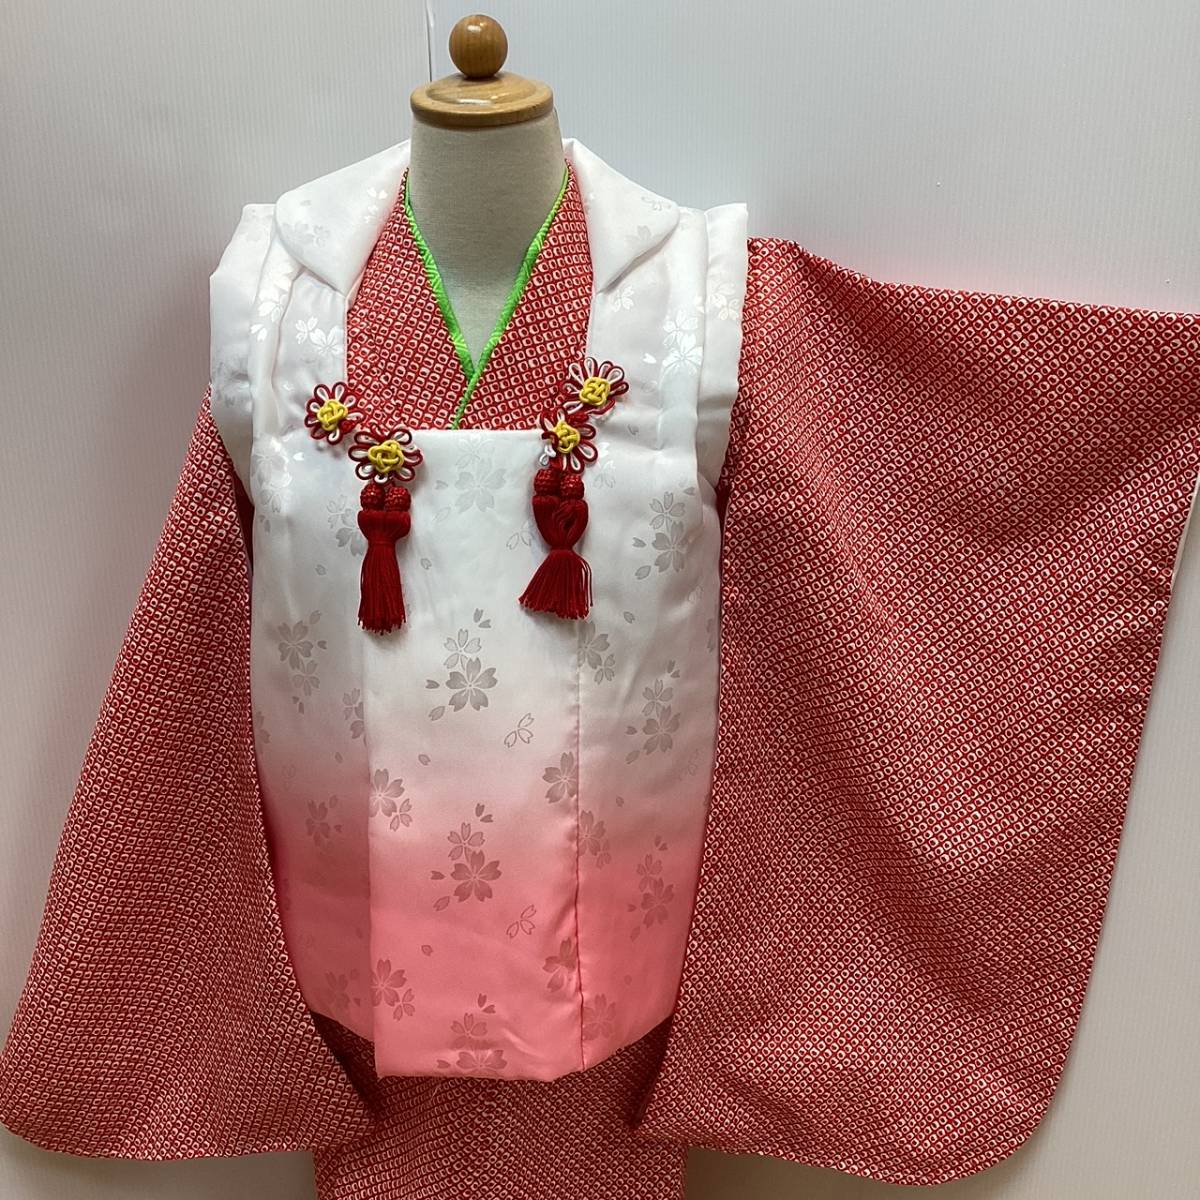  "Семь, пять, три" кимоно mi228t 3 лет . ткань пальто .. рисунок белый розовый bokashi сделано в Японии новый товар включая доставку 